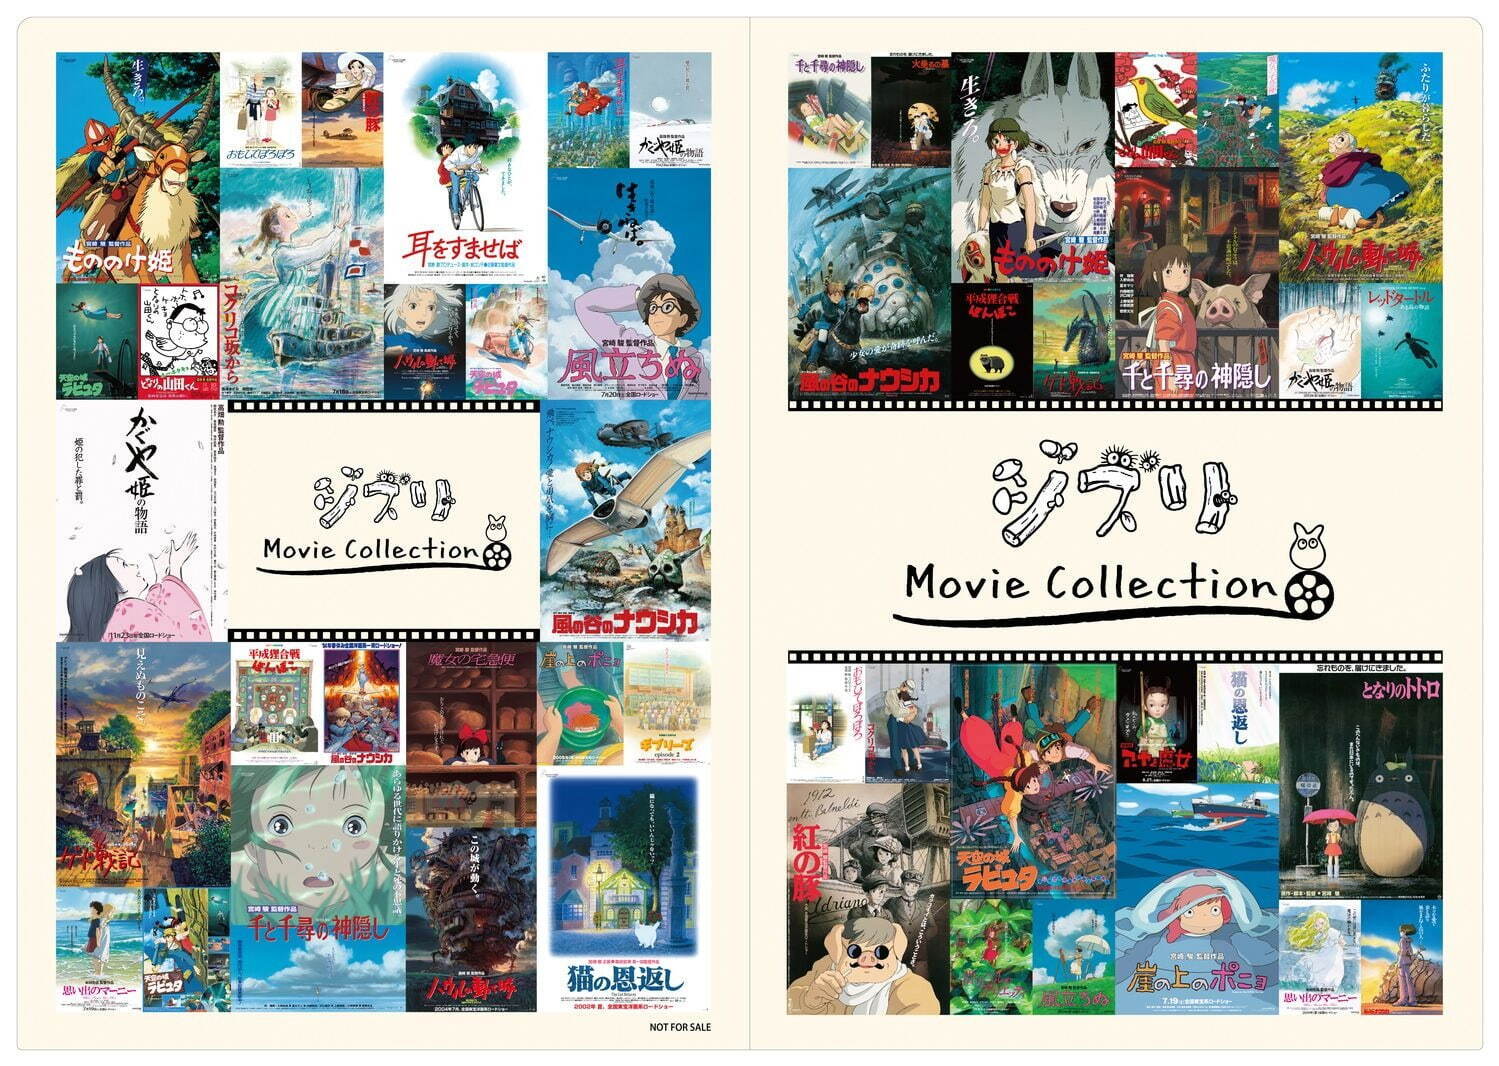 「東宝アニメーションストア」オリジナル特典 A4「紙製ファイル」
※「ジブリMovie Collection」シリーズ商品2,000円以上を購入にすると、1会計につき1枚をプレゼント。